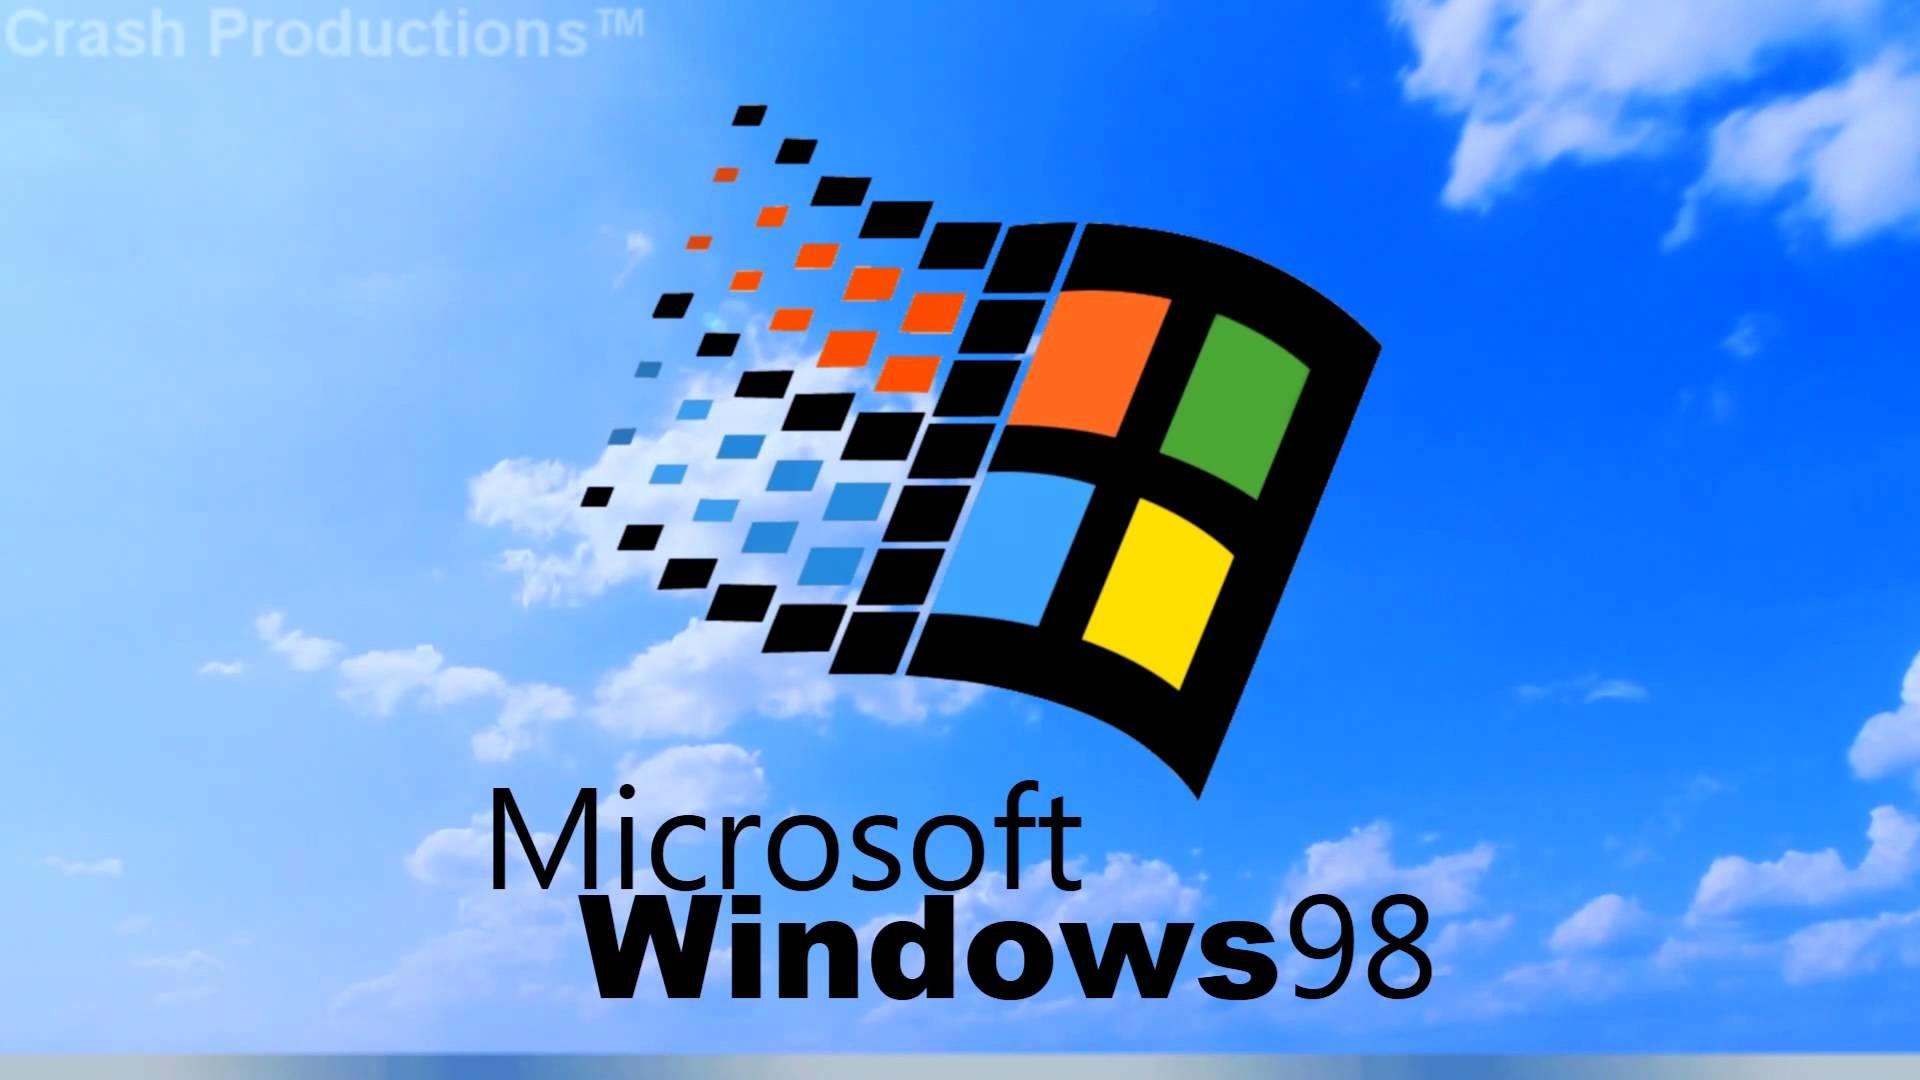 Màn hình Windows 98 của bạn sẽ không còn tối nữa với những hình nền màn hình đẹp nhất. Tải về và tận hưởng sự đẹp mắt và phong phú của những hình ảnh này bạn nhé!